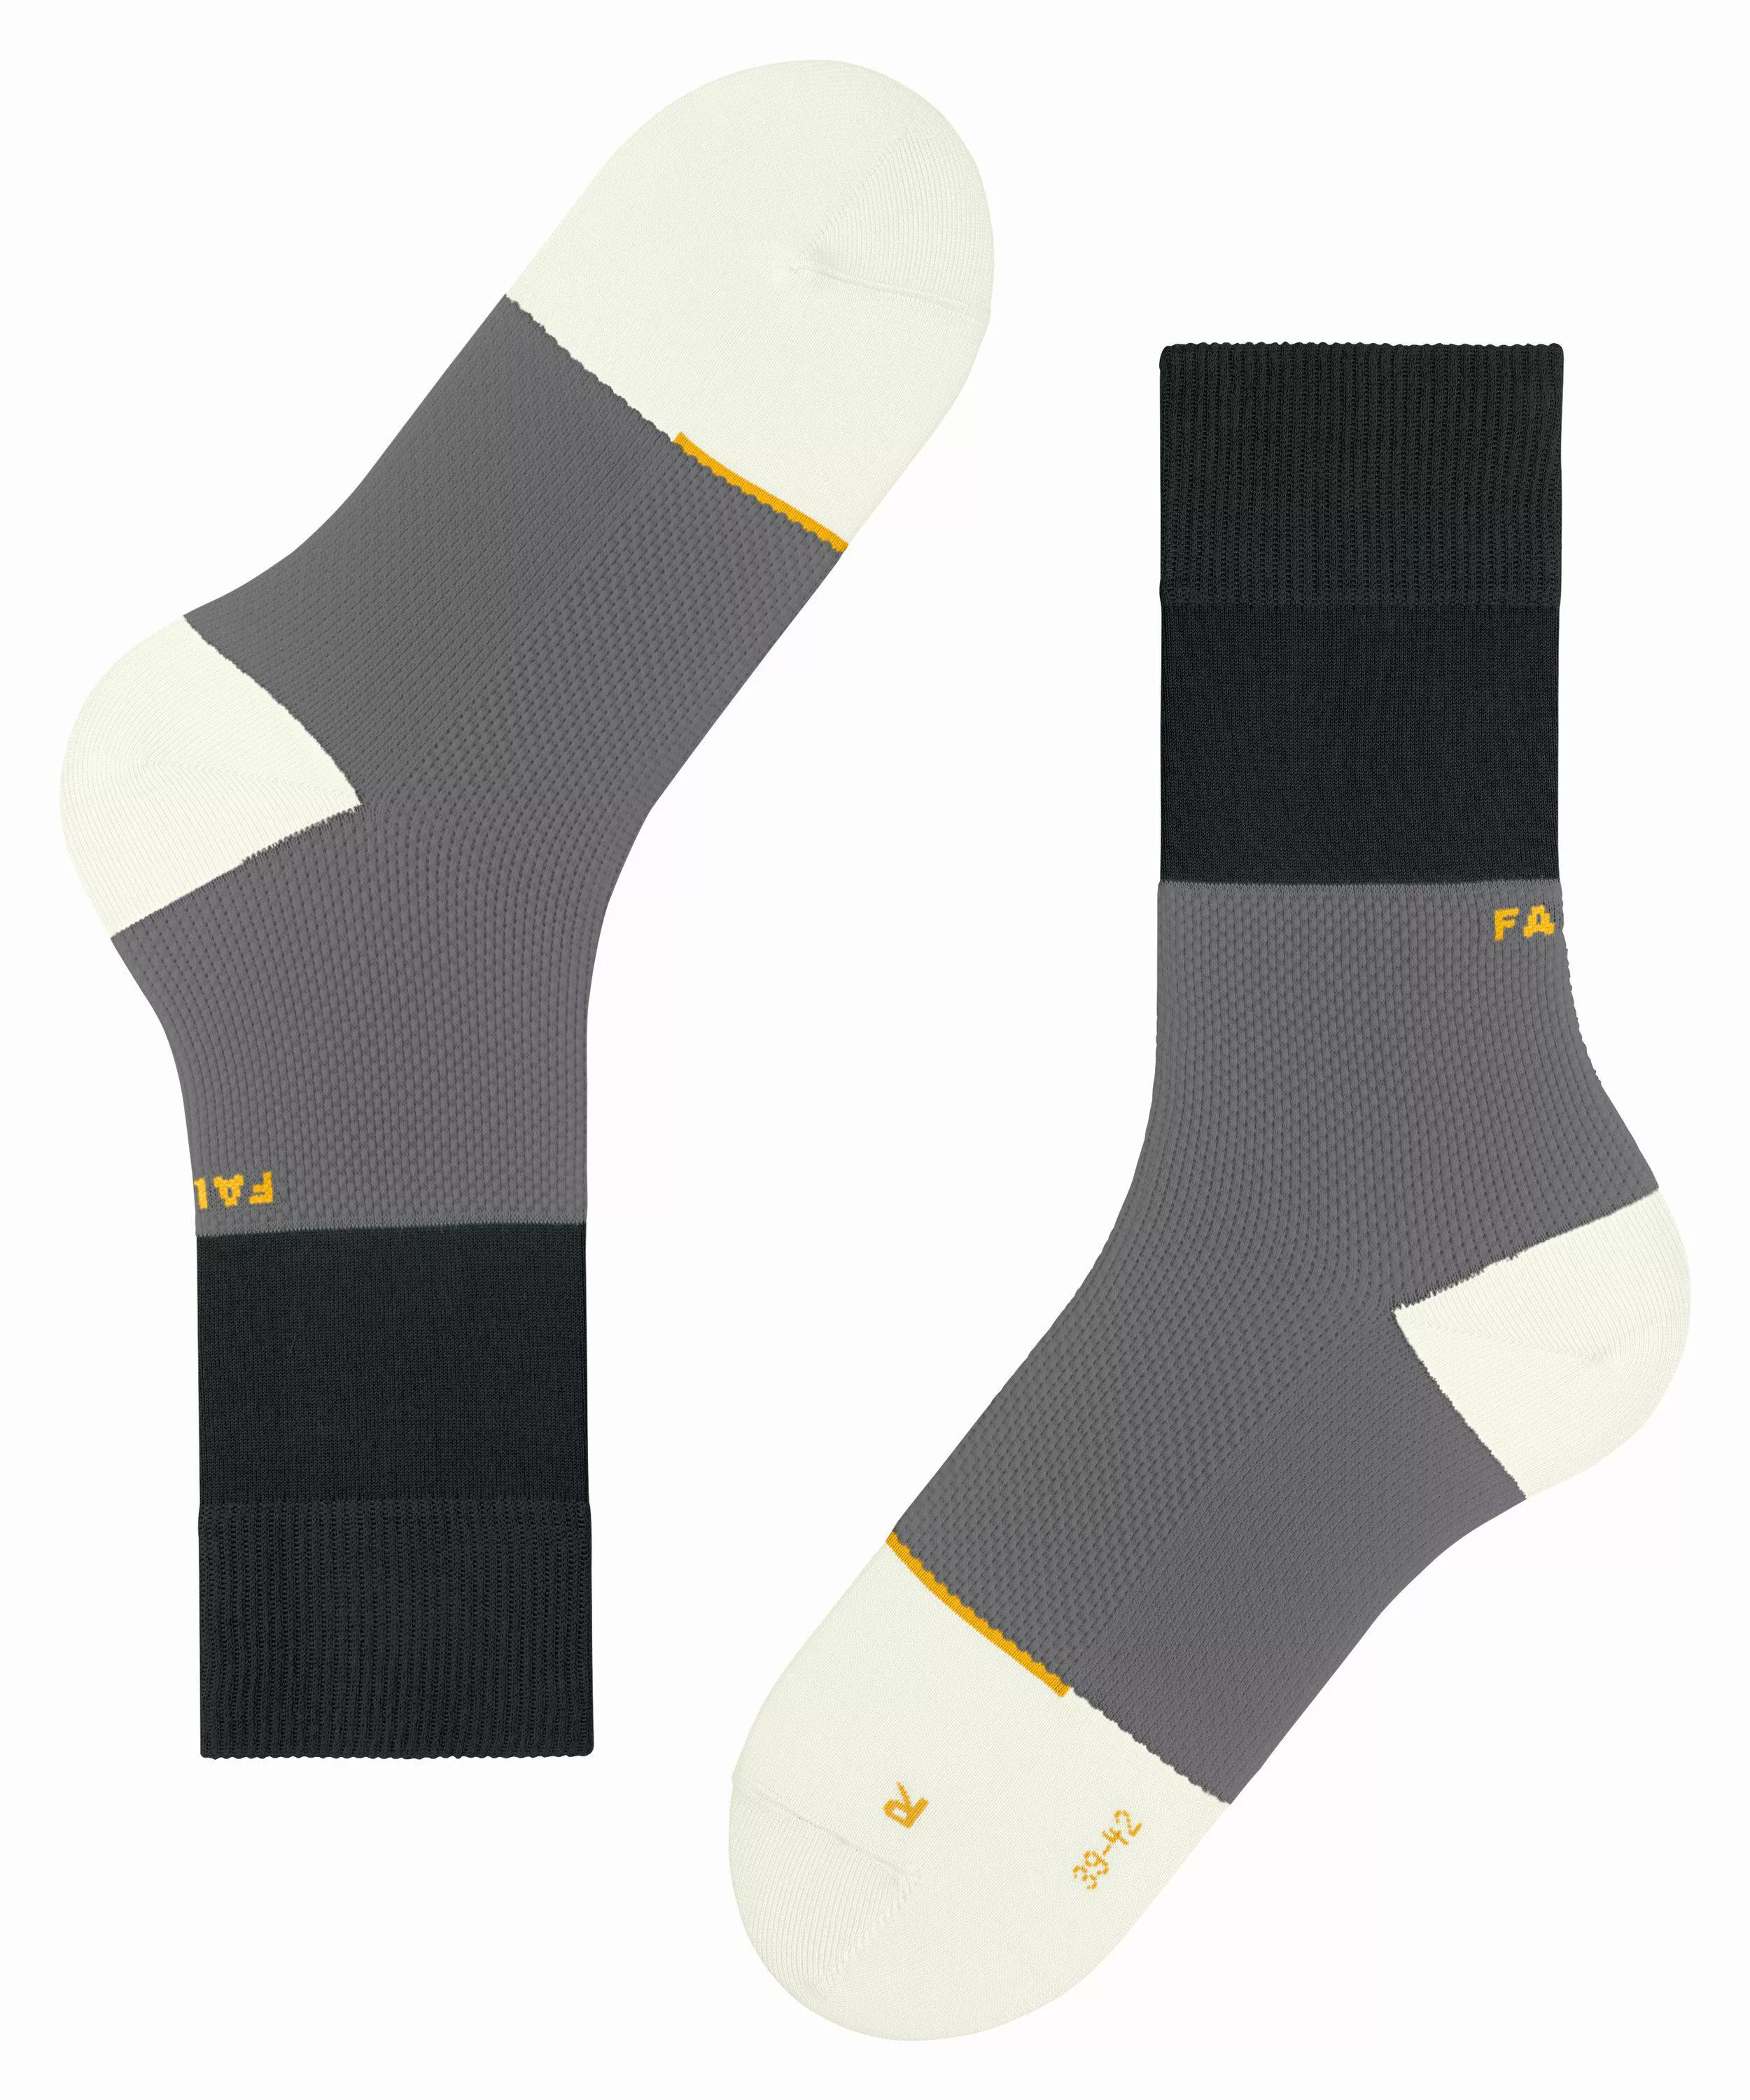 FALKE Nature Force Socken, 42-43, Schwarz, Streifen, Baumwolle (Bio), 12452 günstig online kaufen